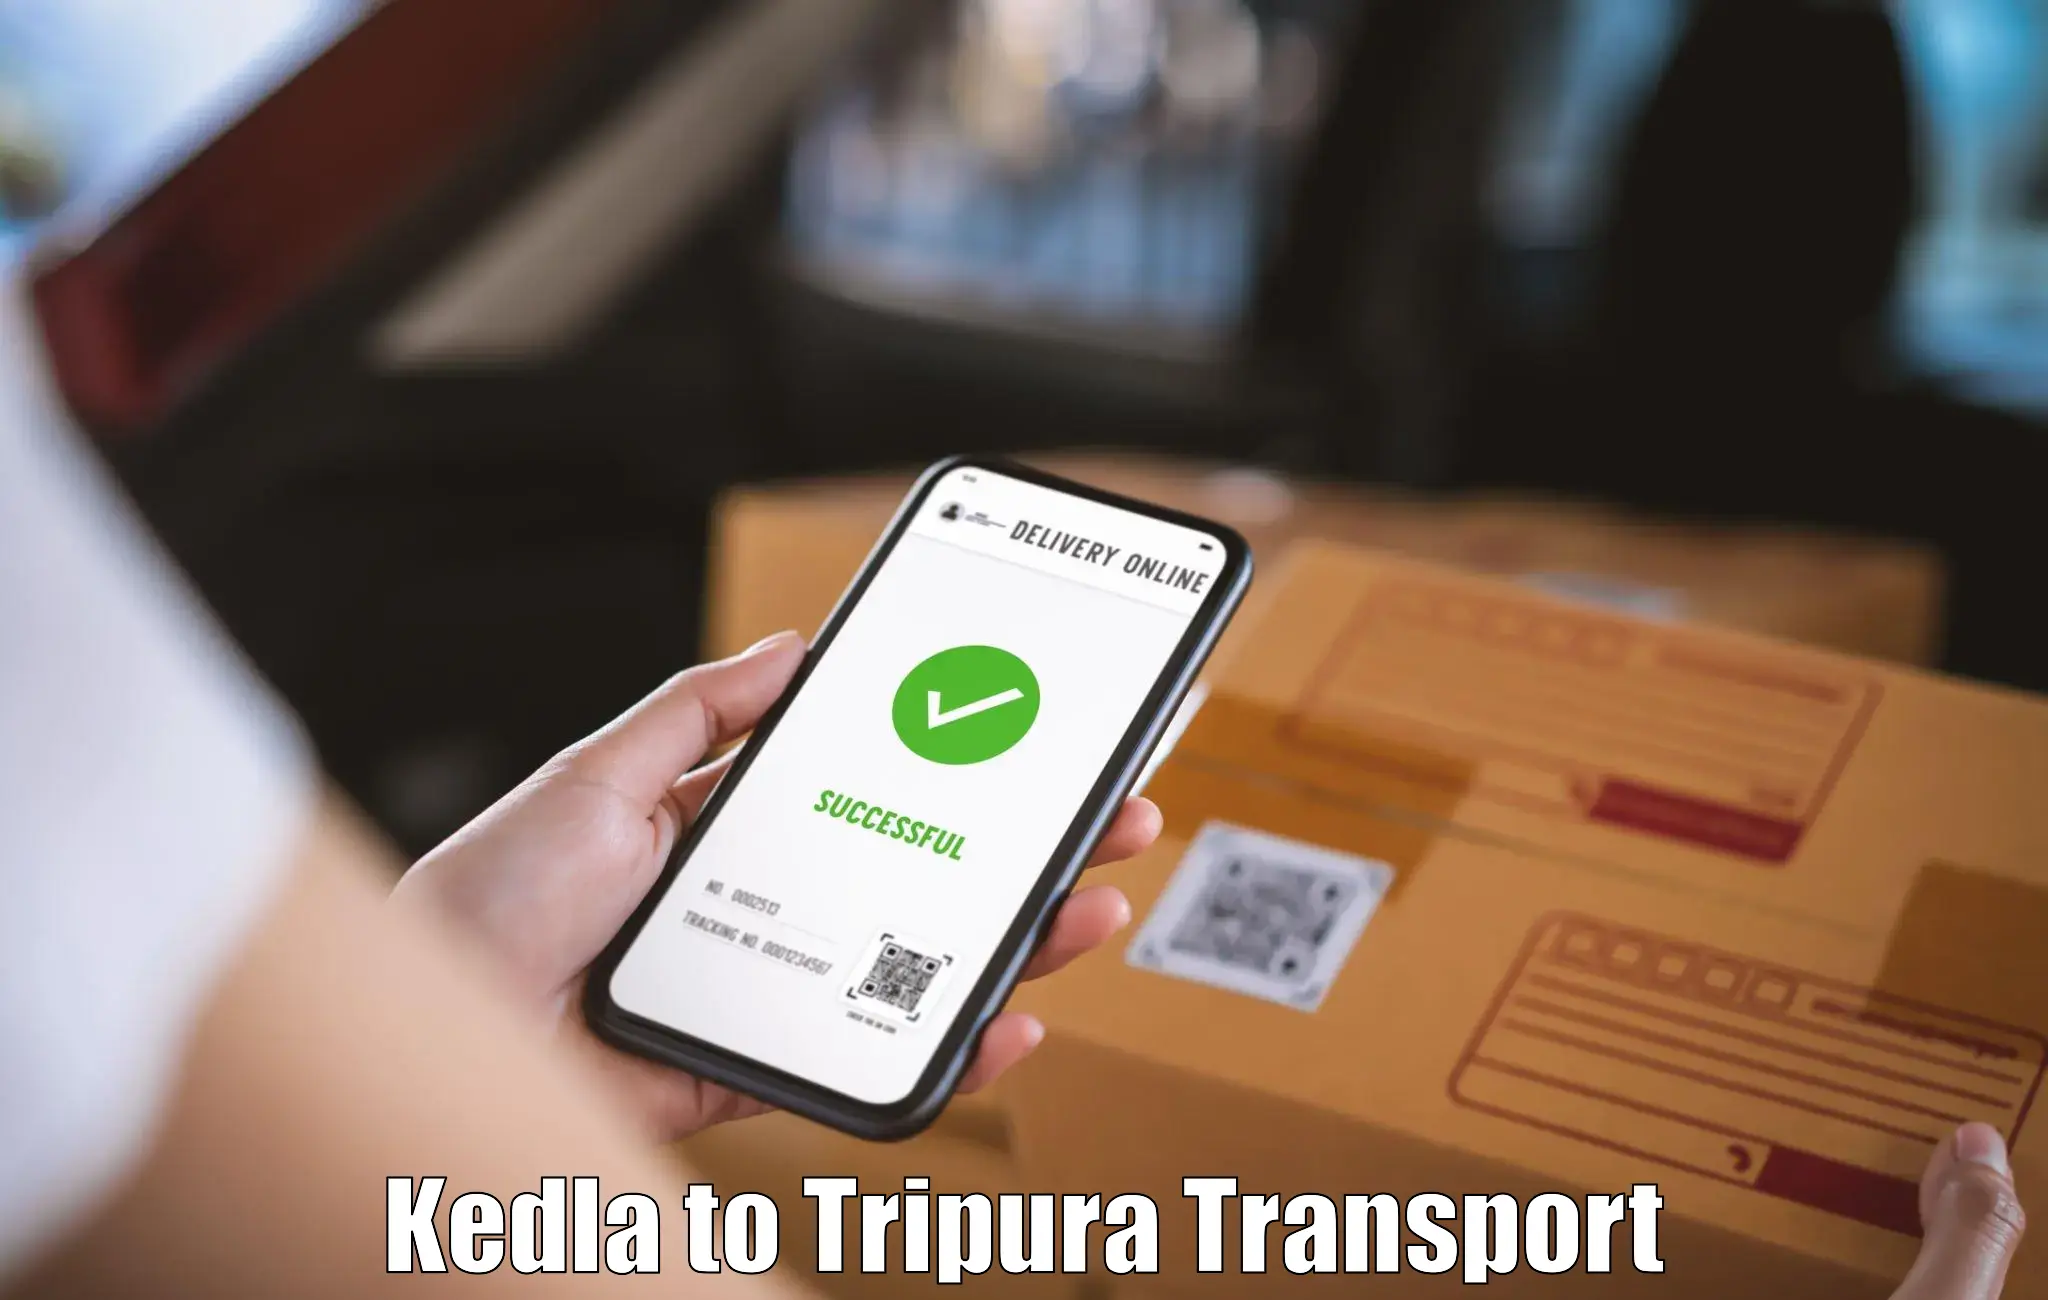 Vehicle transport services Kedla to Manughat